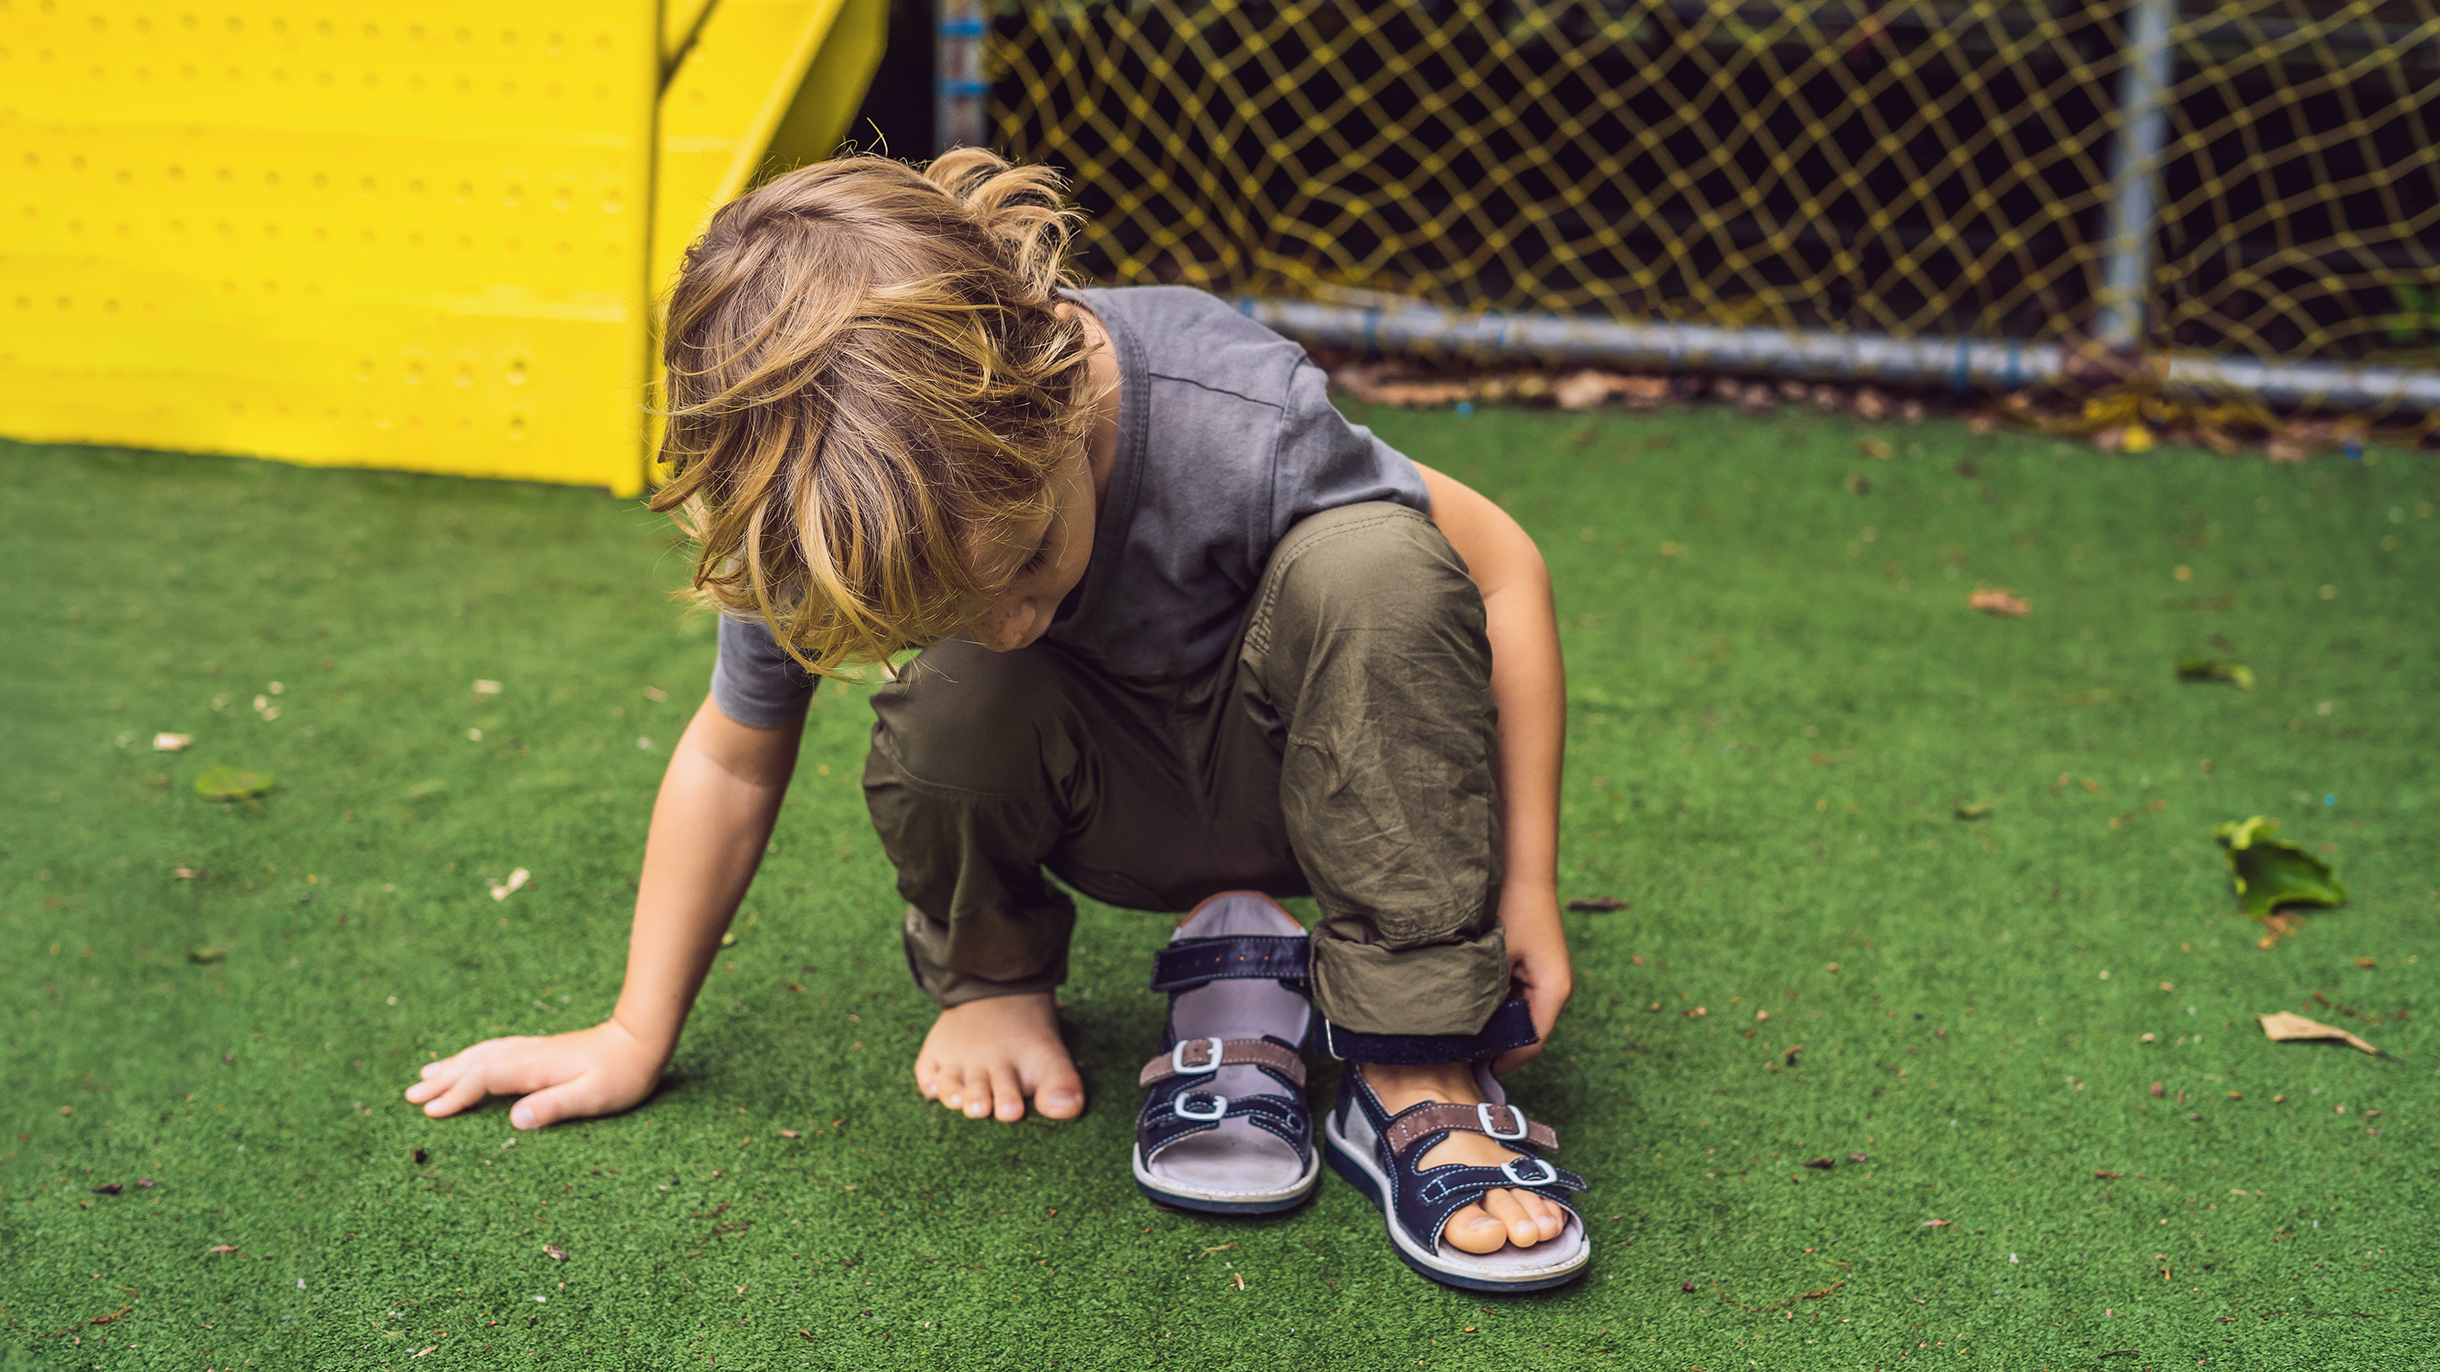 Бесплатная ортопедическая обувь для детей: кому положена, как и где получить